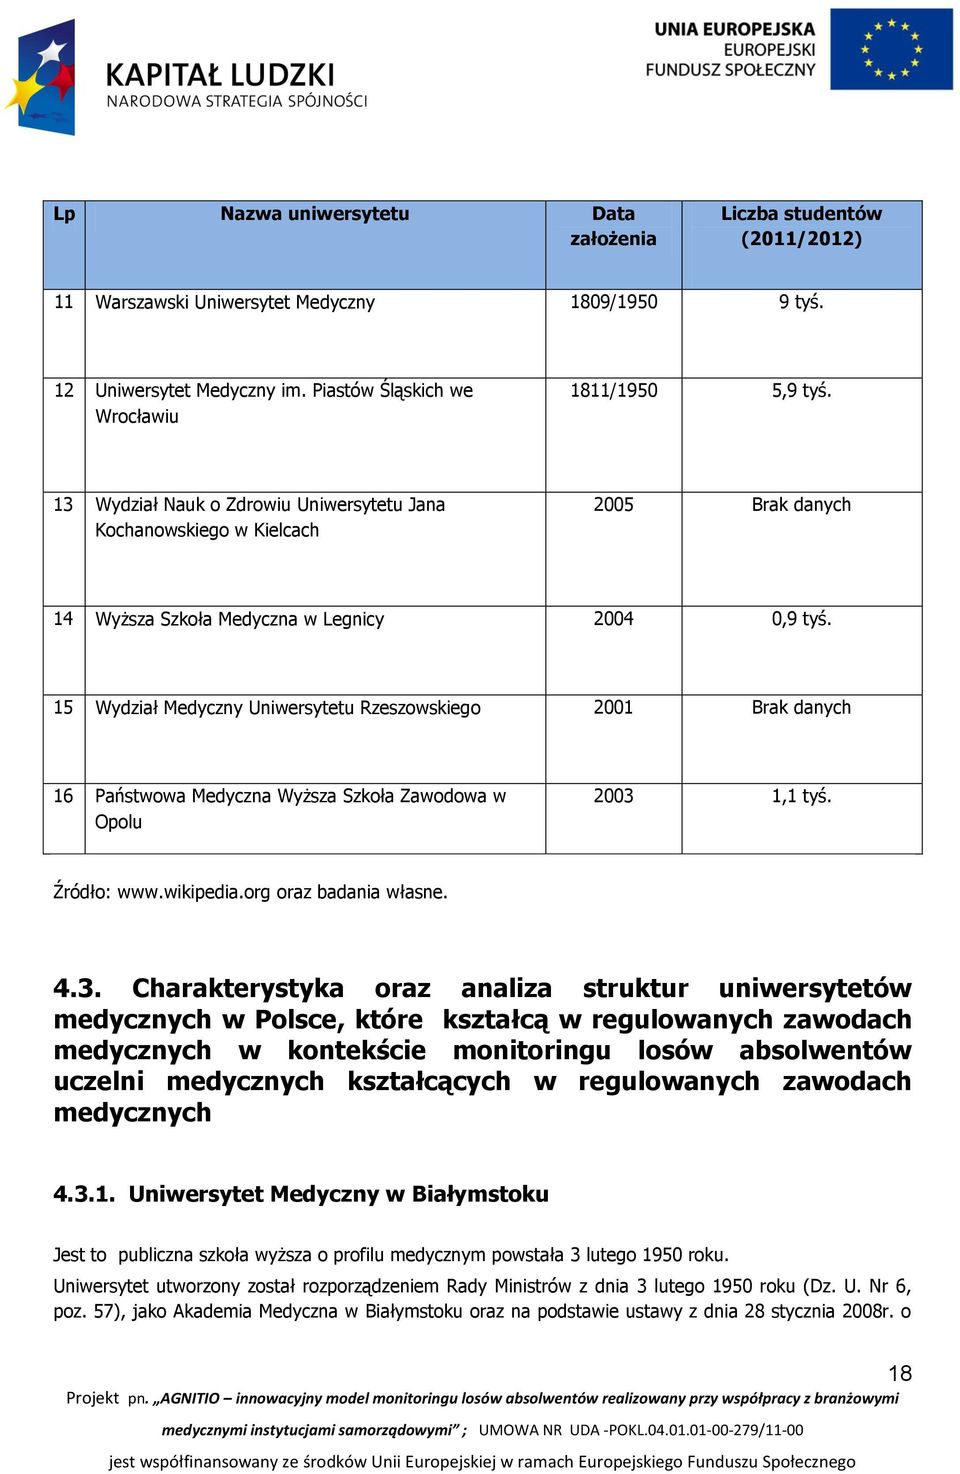 15 Wydział Medyczny Uniwersytetu Rzeszowskiego 2001 Brak danych 16 Państwowa Medyczna Wyższa Szkoła Zawodowa w Opolu 2003 